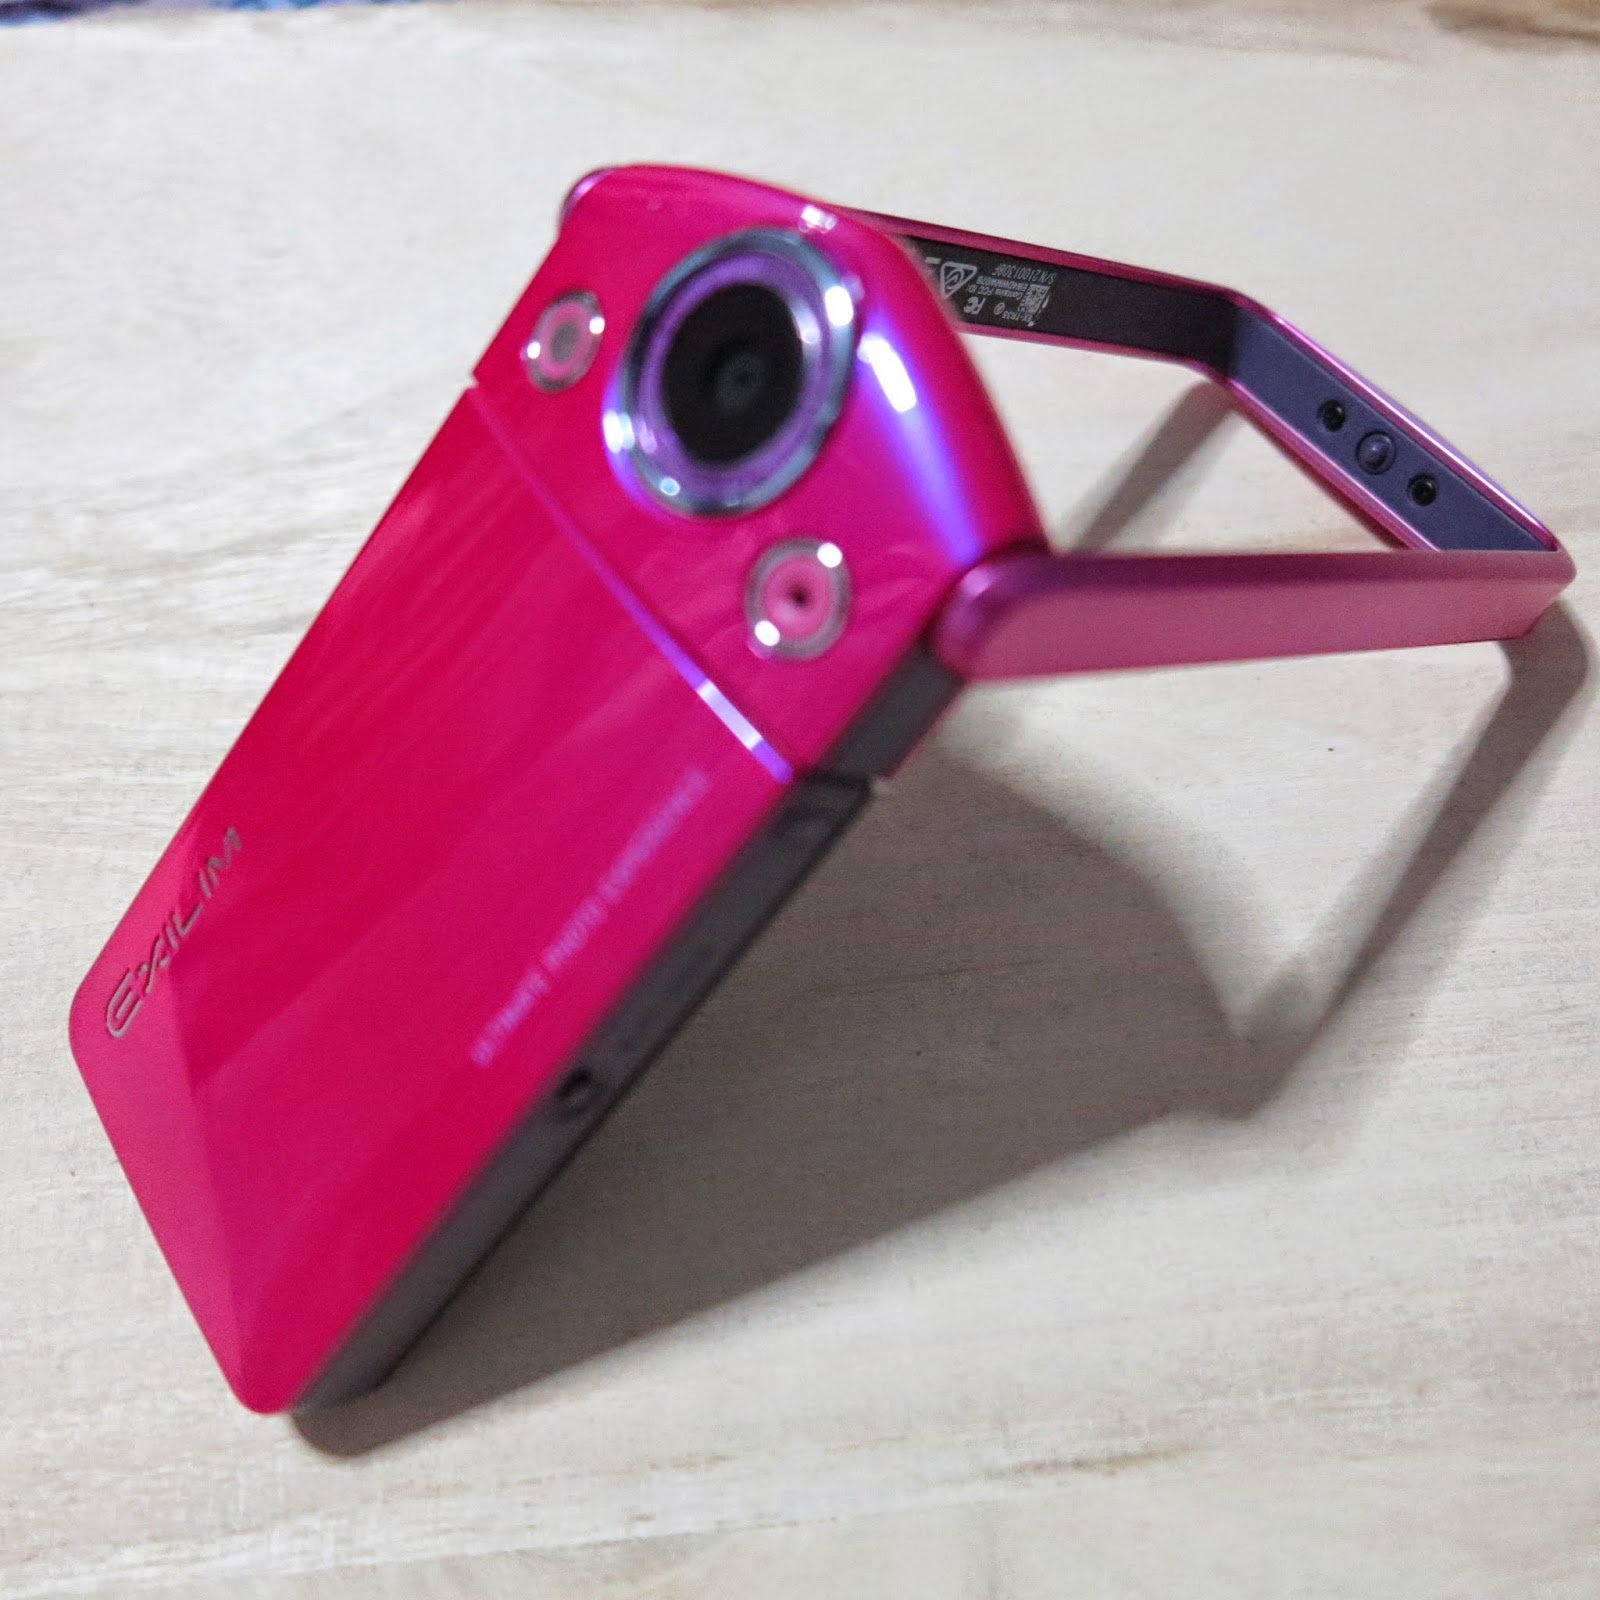 Flikkeren Aanvankelijk dood gaan Best selfie handheld compact digital camera - Casio Exilim TR-35 Review |  Award-winning Singapore Beauty, Travel, Food, & Lifestyle Blog | Claire's  Flair